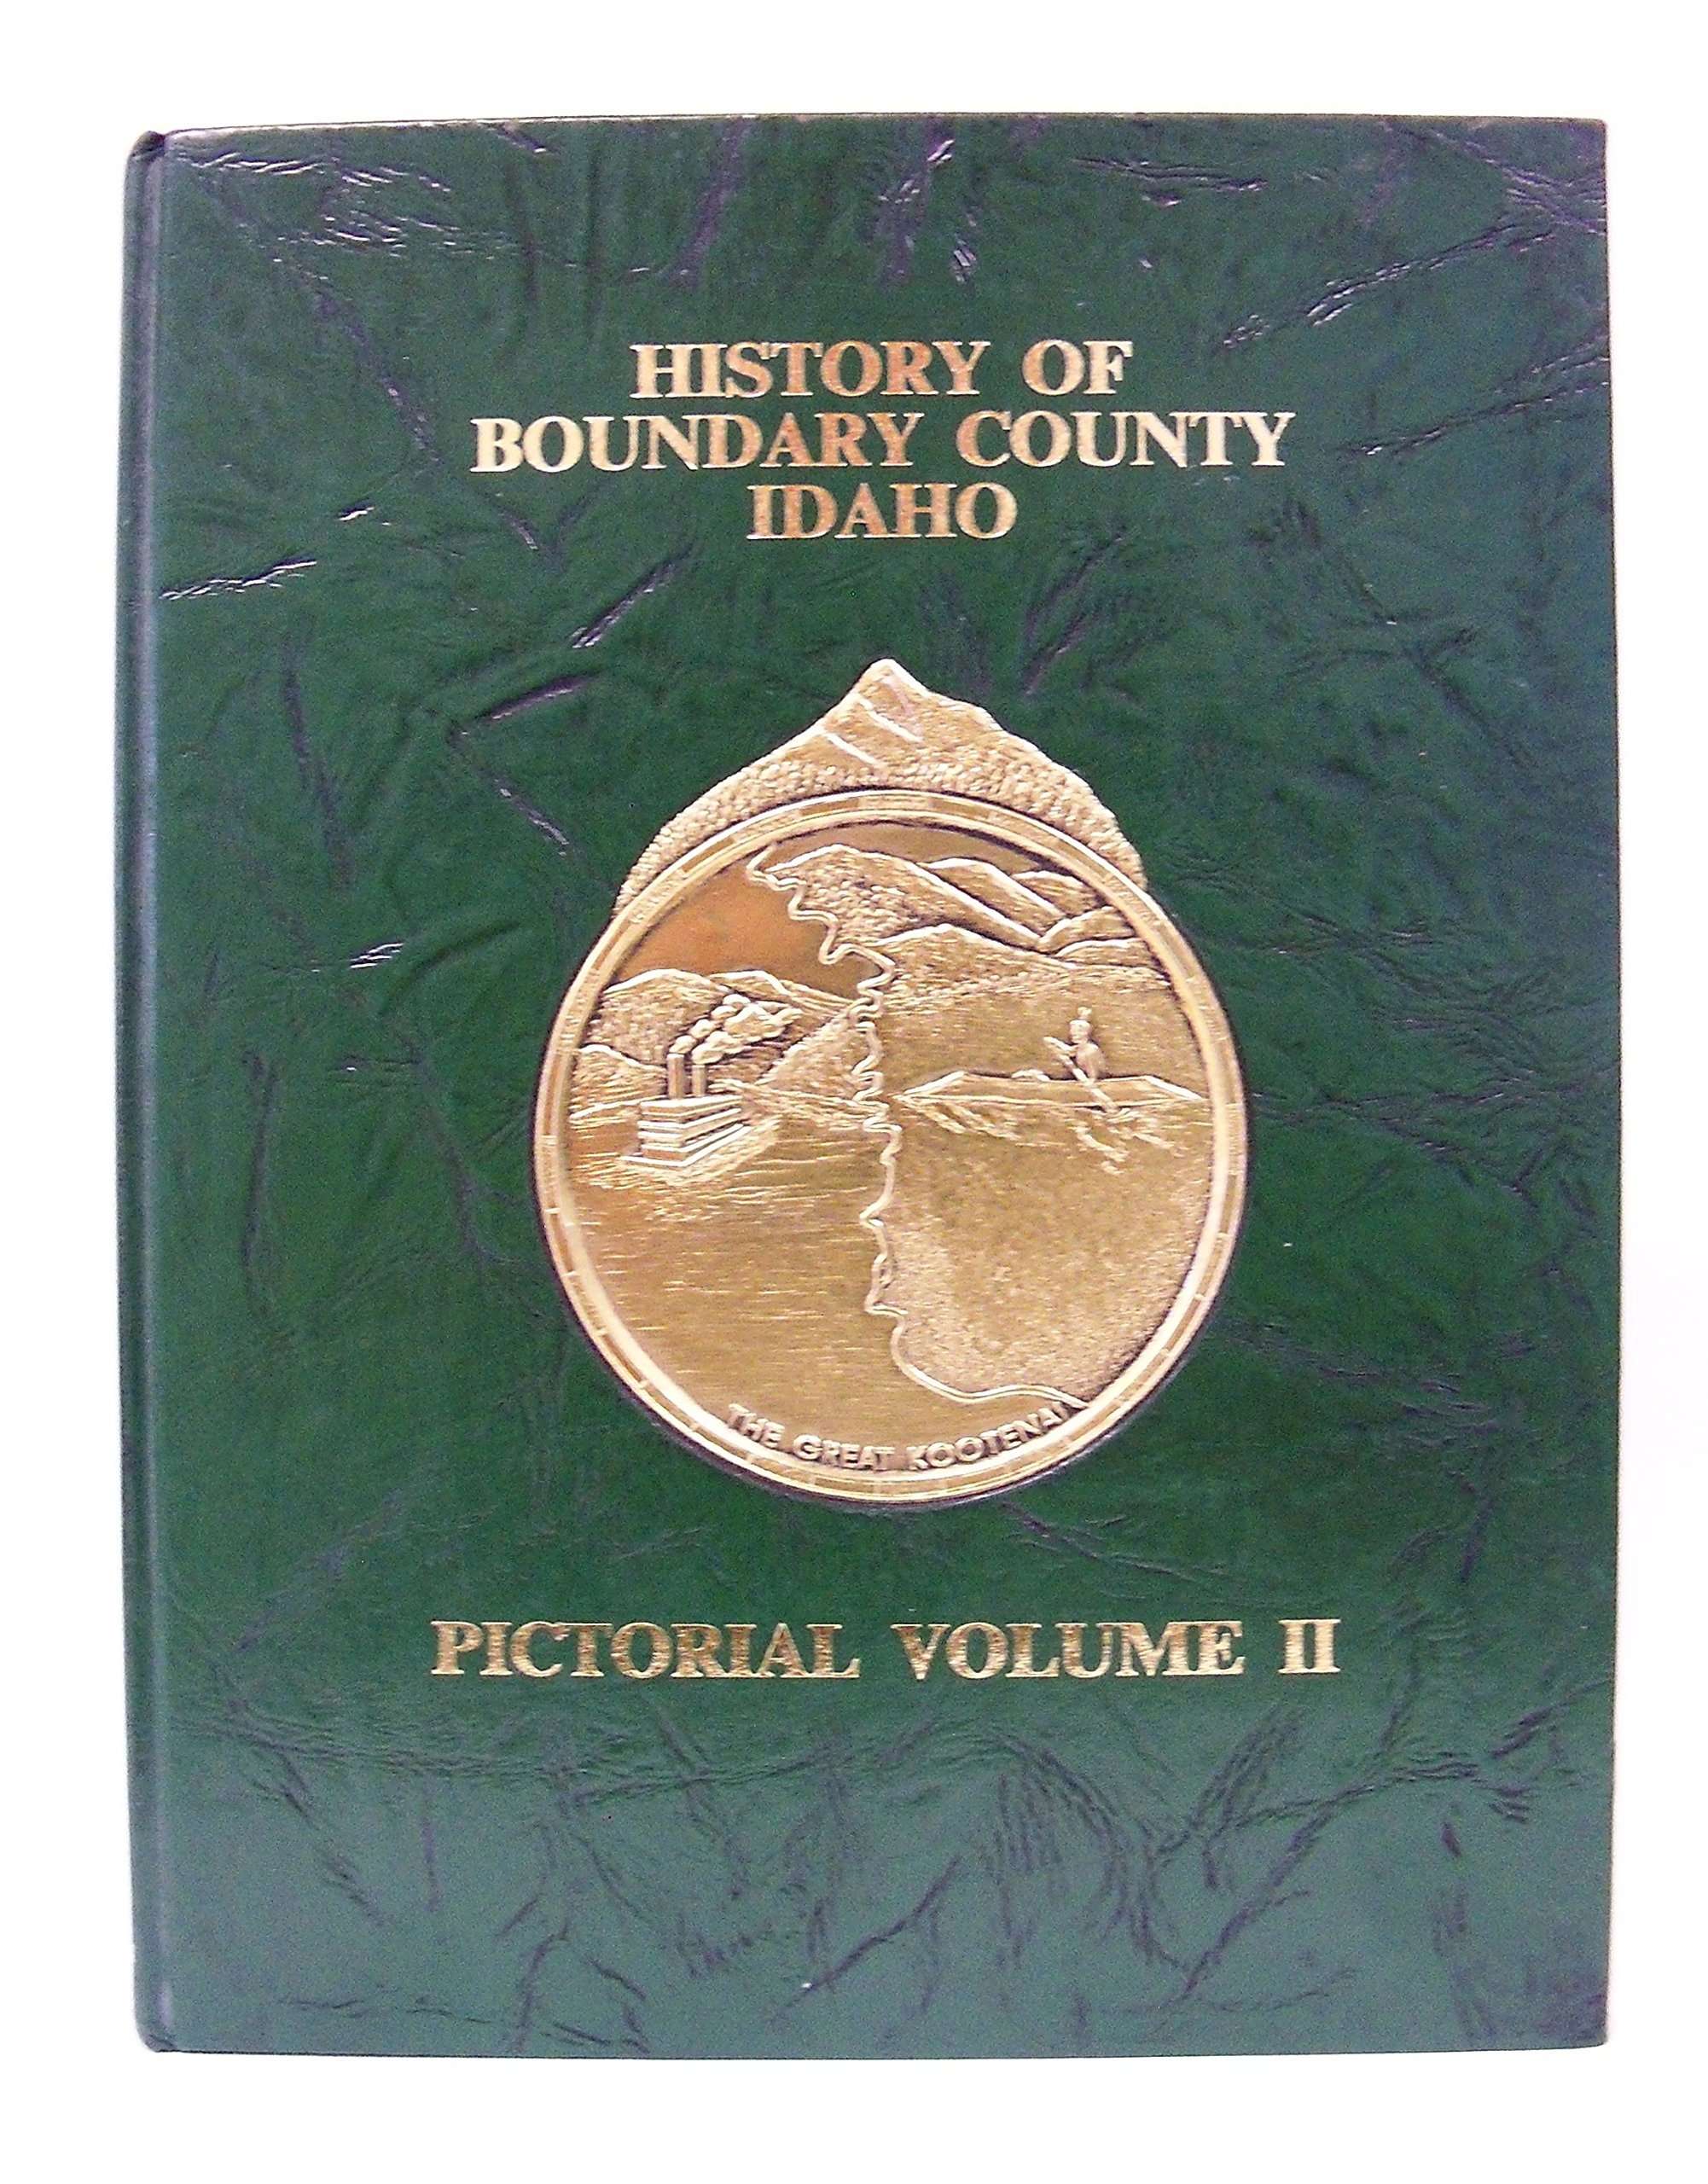 History of Boundary County, Idaho (book cover)